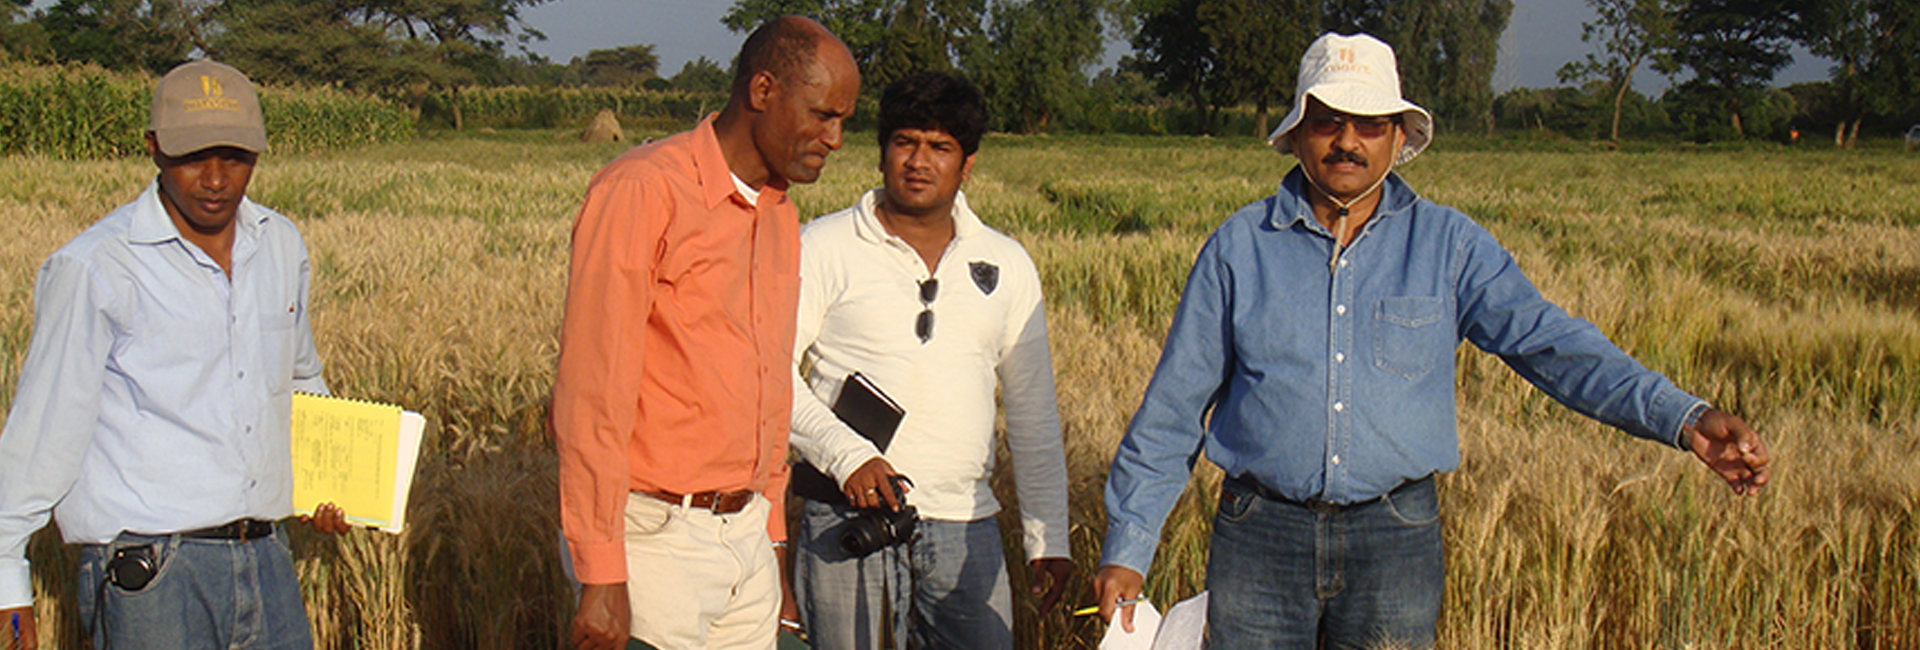 Ganador de Pravasi Bharatiya Samman, el científico Dr. Ravi Singh está trabajando por la seguridad alimentaria para todos